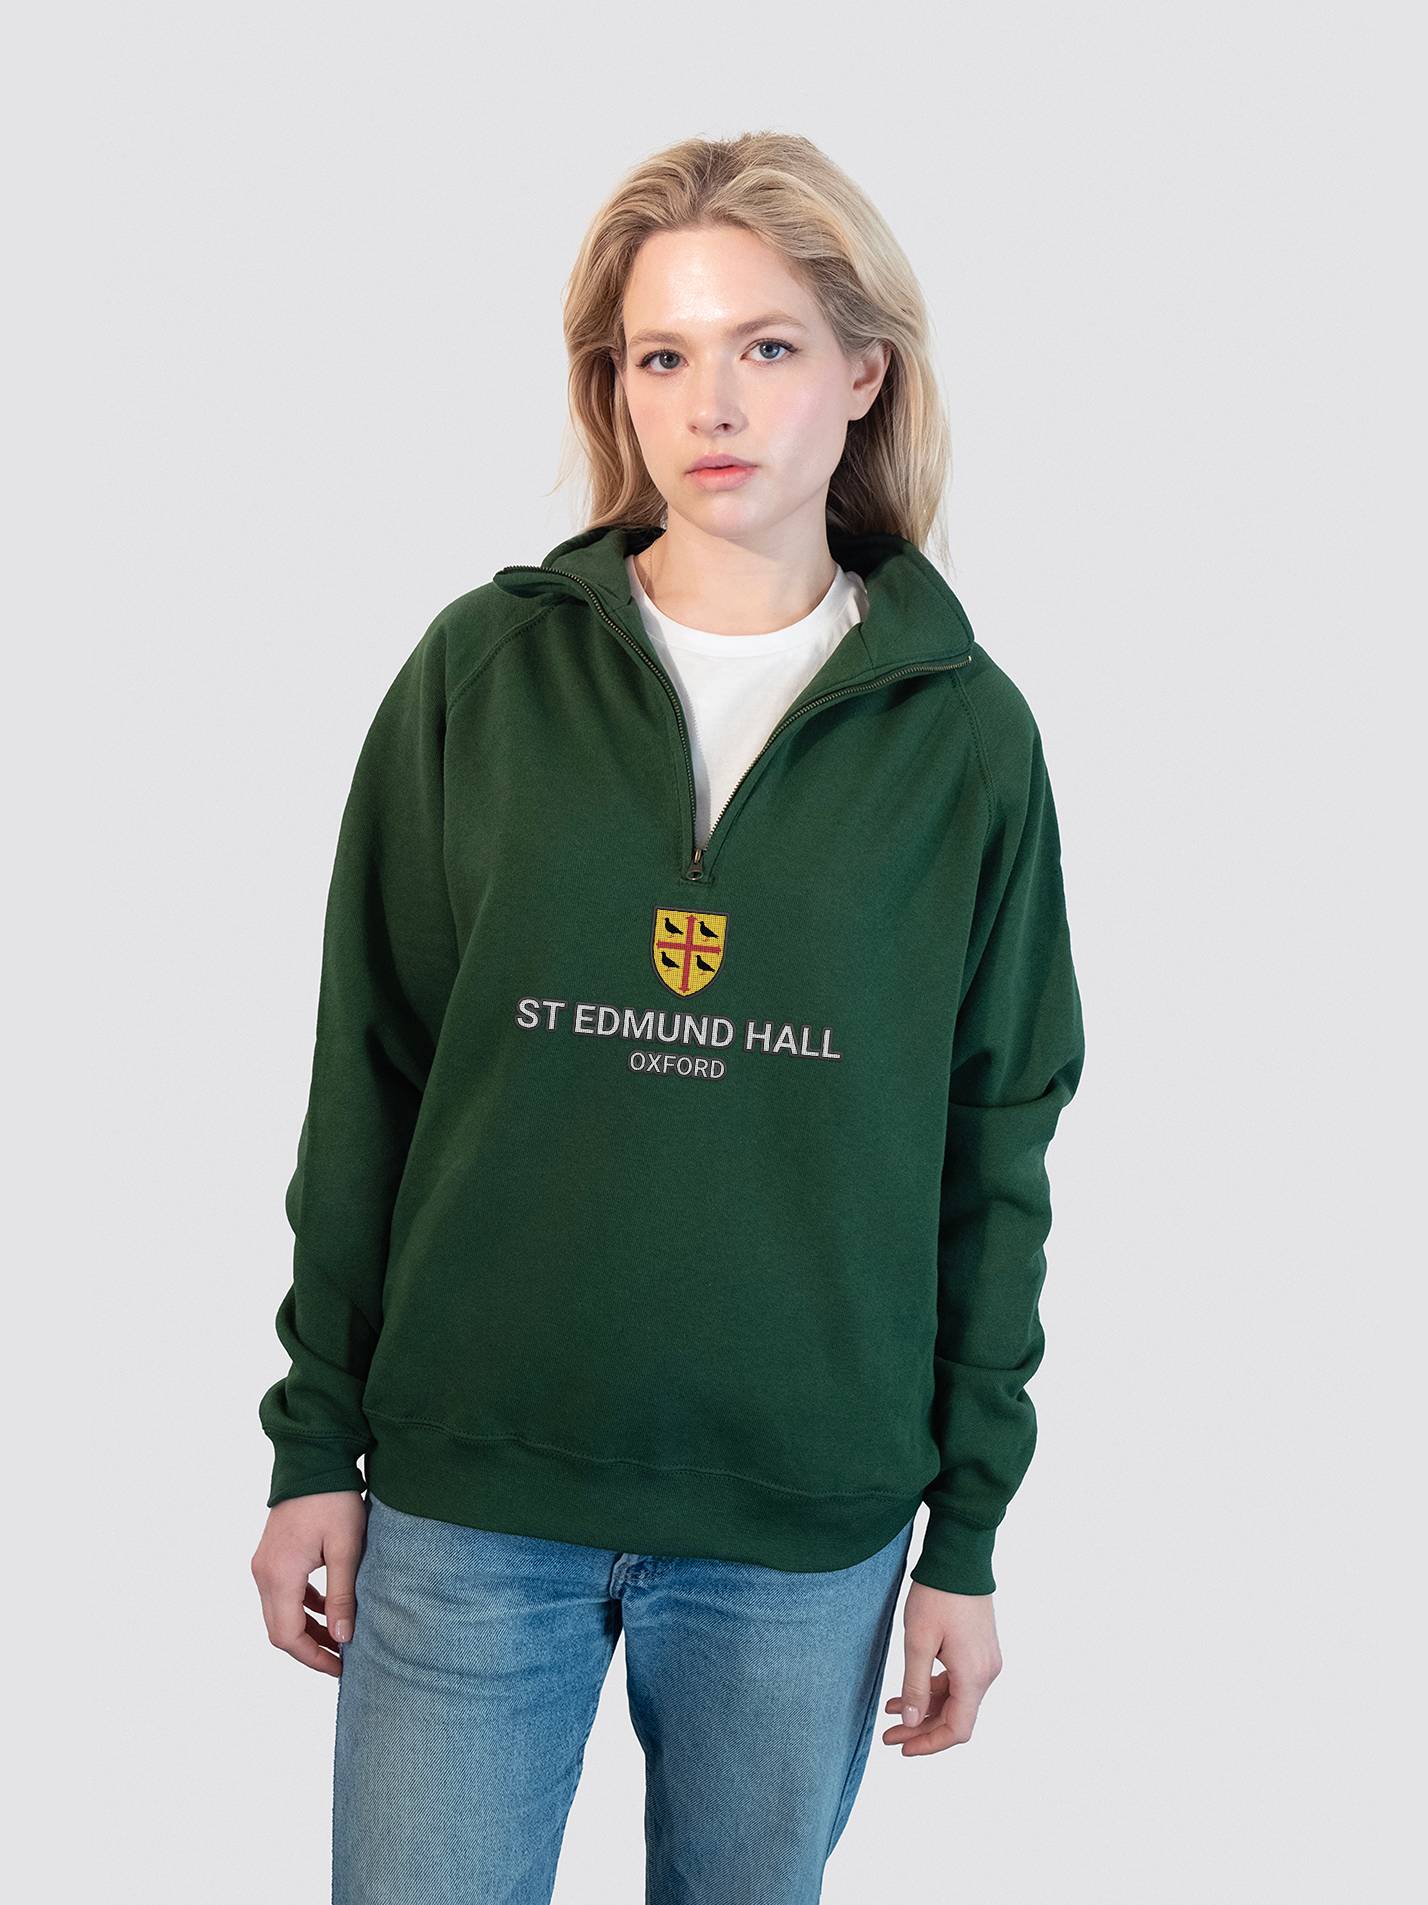 St Edmund Hall Oxford Heritage Unisex 1/4 Zip Sweatshirt